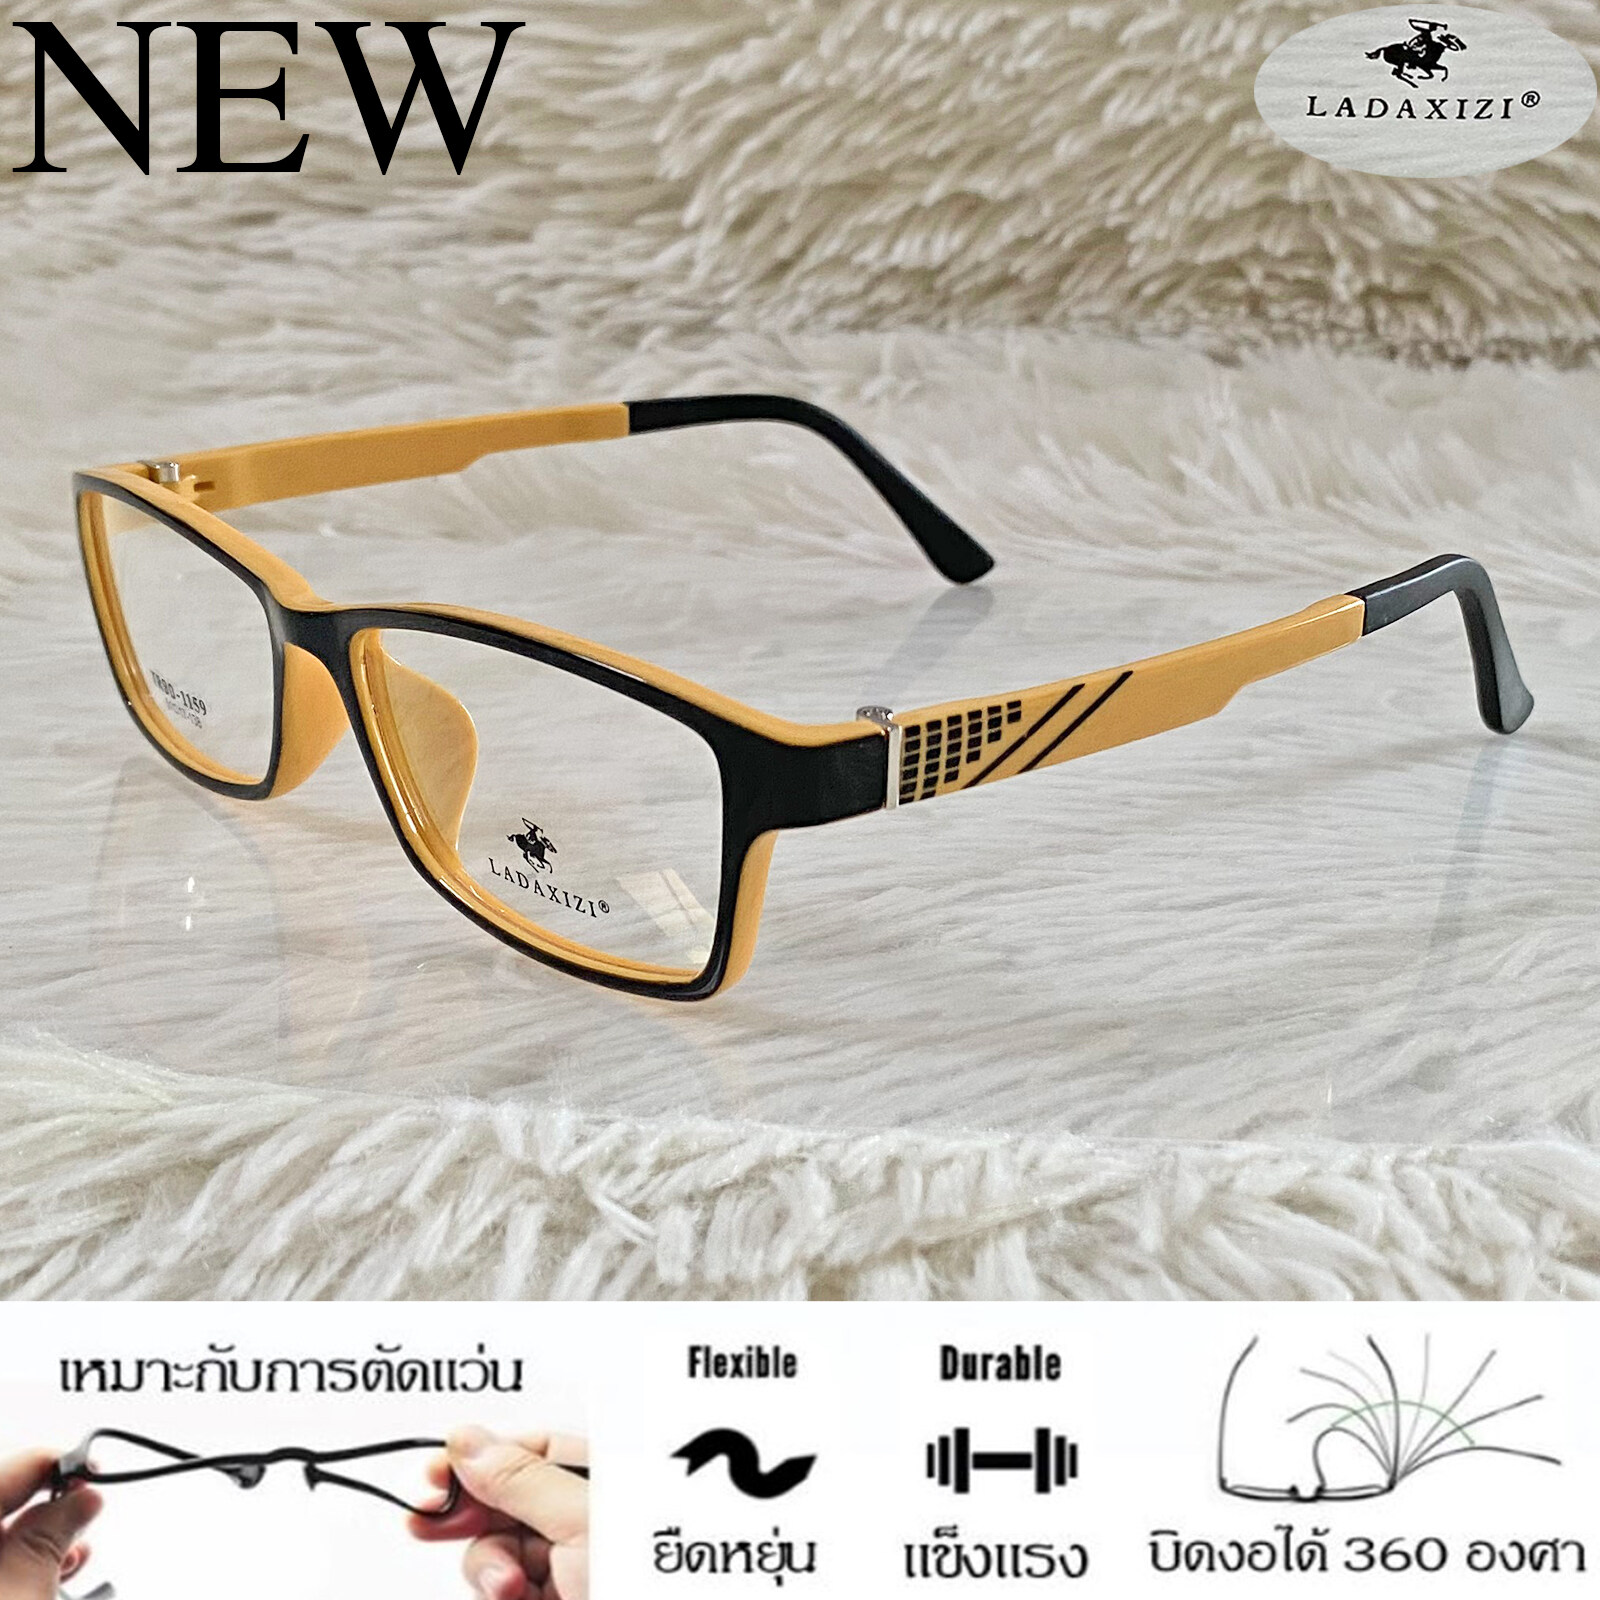 กรอบแว่นตา TR 90 สำหรับตัดเลนส์ แว่นตา Fashion ชาย-หญิง รุ่น LADAXIZI 1159 สีดำตัดส้ม กรอบเต็ม ทรงเหลี่ยม ขาข้อต่อ ทนความร้อนสูง รับตัดเลนส์ ทุกชนิด